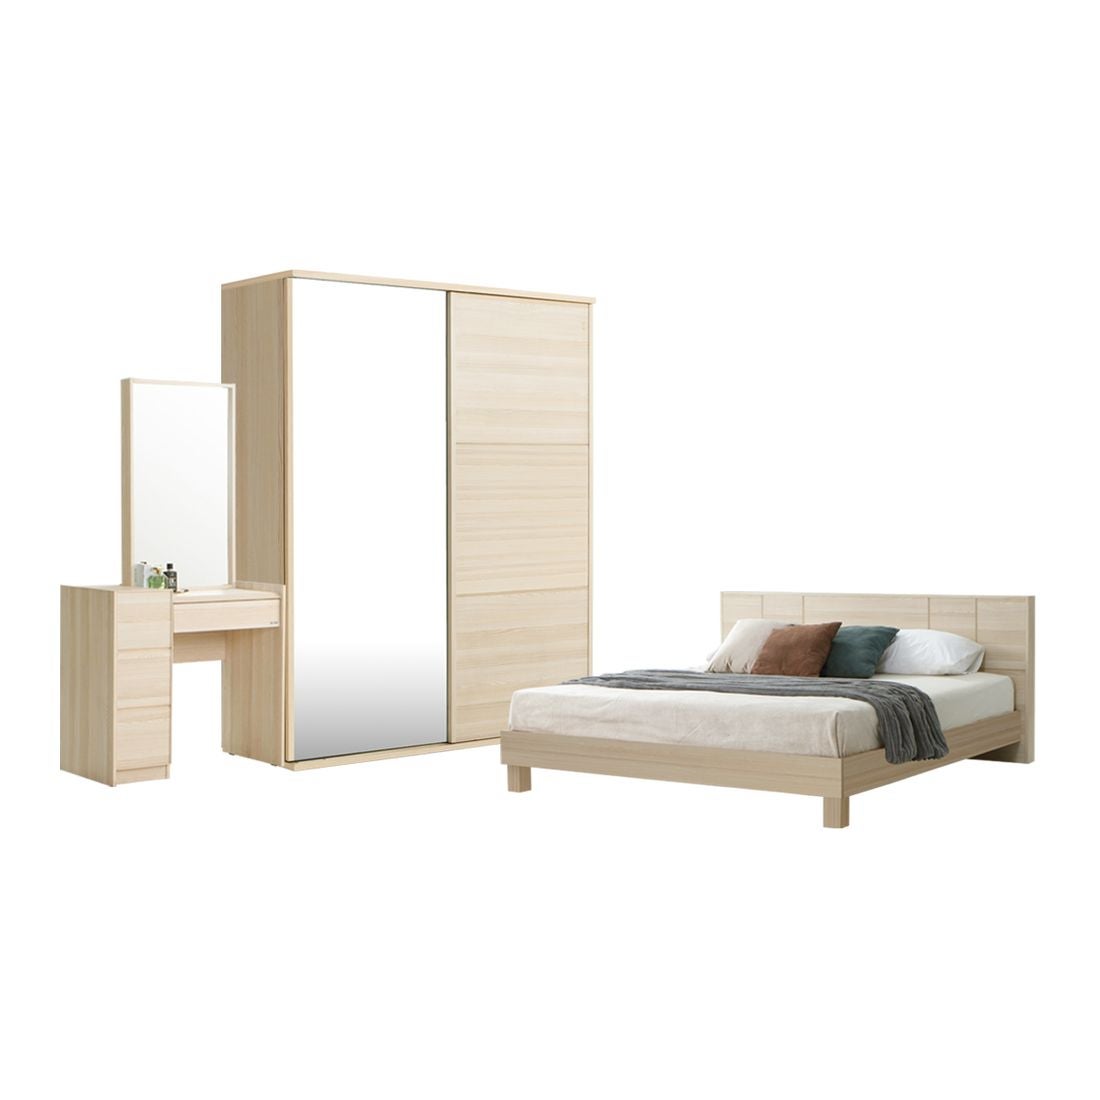 59021782-hakone-furniture-bedroom-furniture-bedroom-sets-02